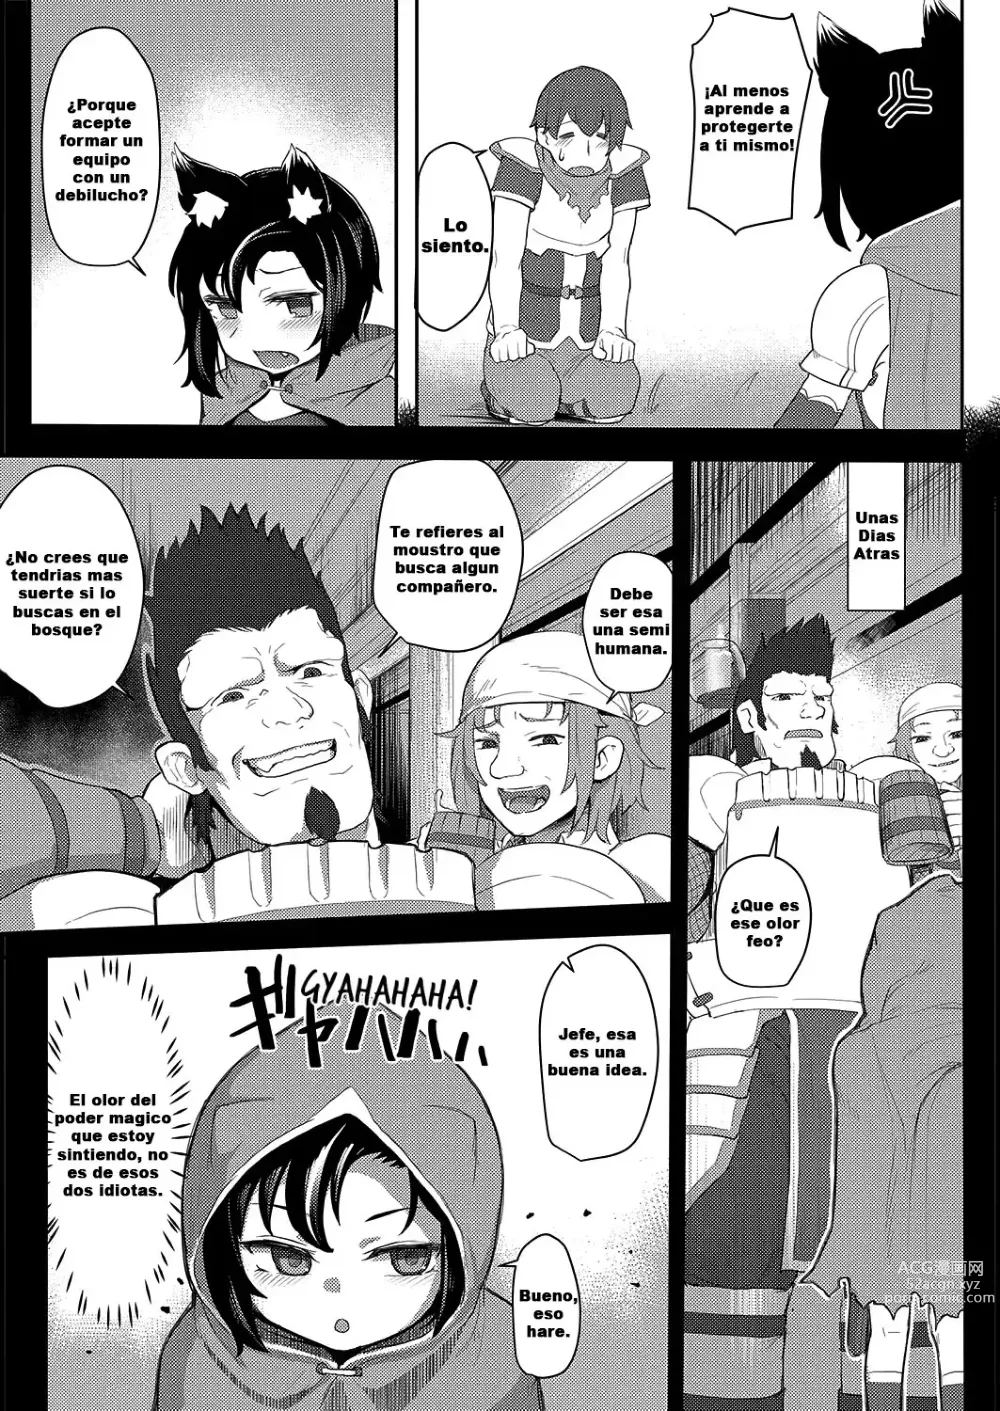 Page 3 of manga Ookami Shoujo wa Sunao ni Narenai